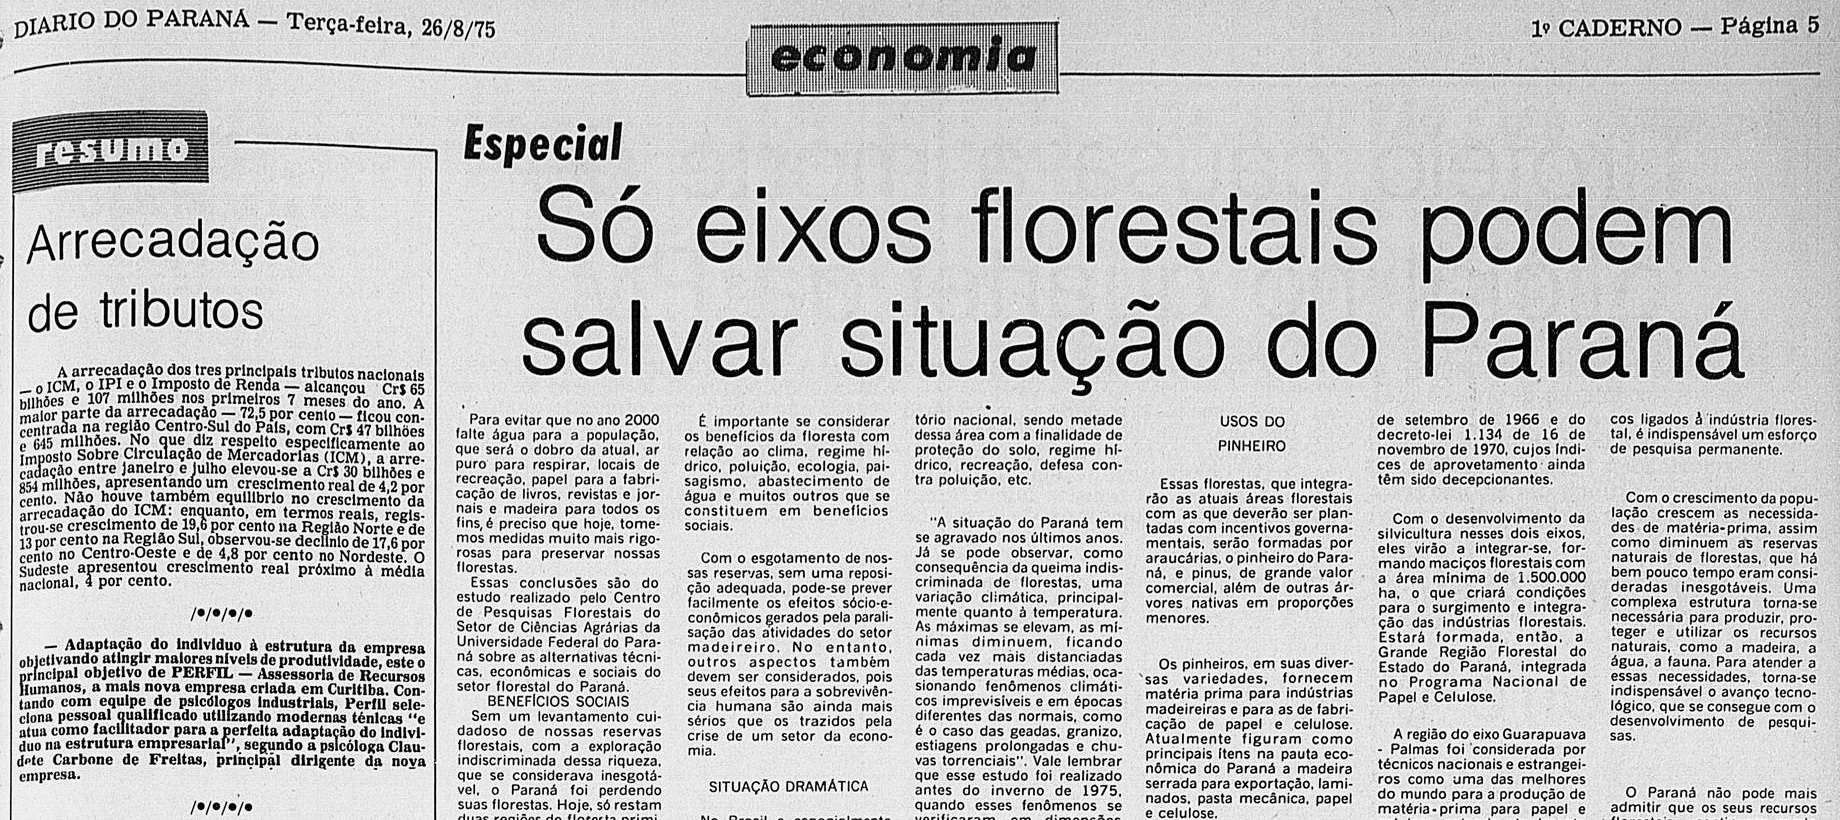 [Grupo RBJ de Comunicação] A silvicultura no eixo do Rio Iratim — Recorte do jornal Diário do Paraná (Fonte: Arquivo/Biblioteca Nacional)